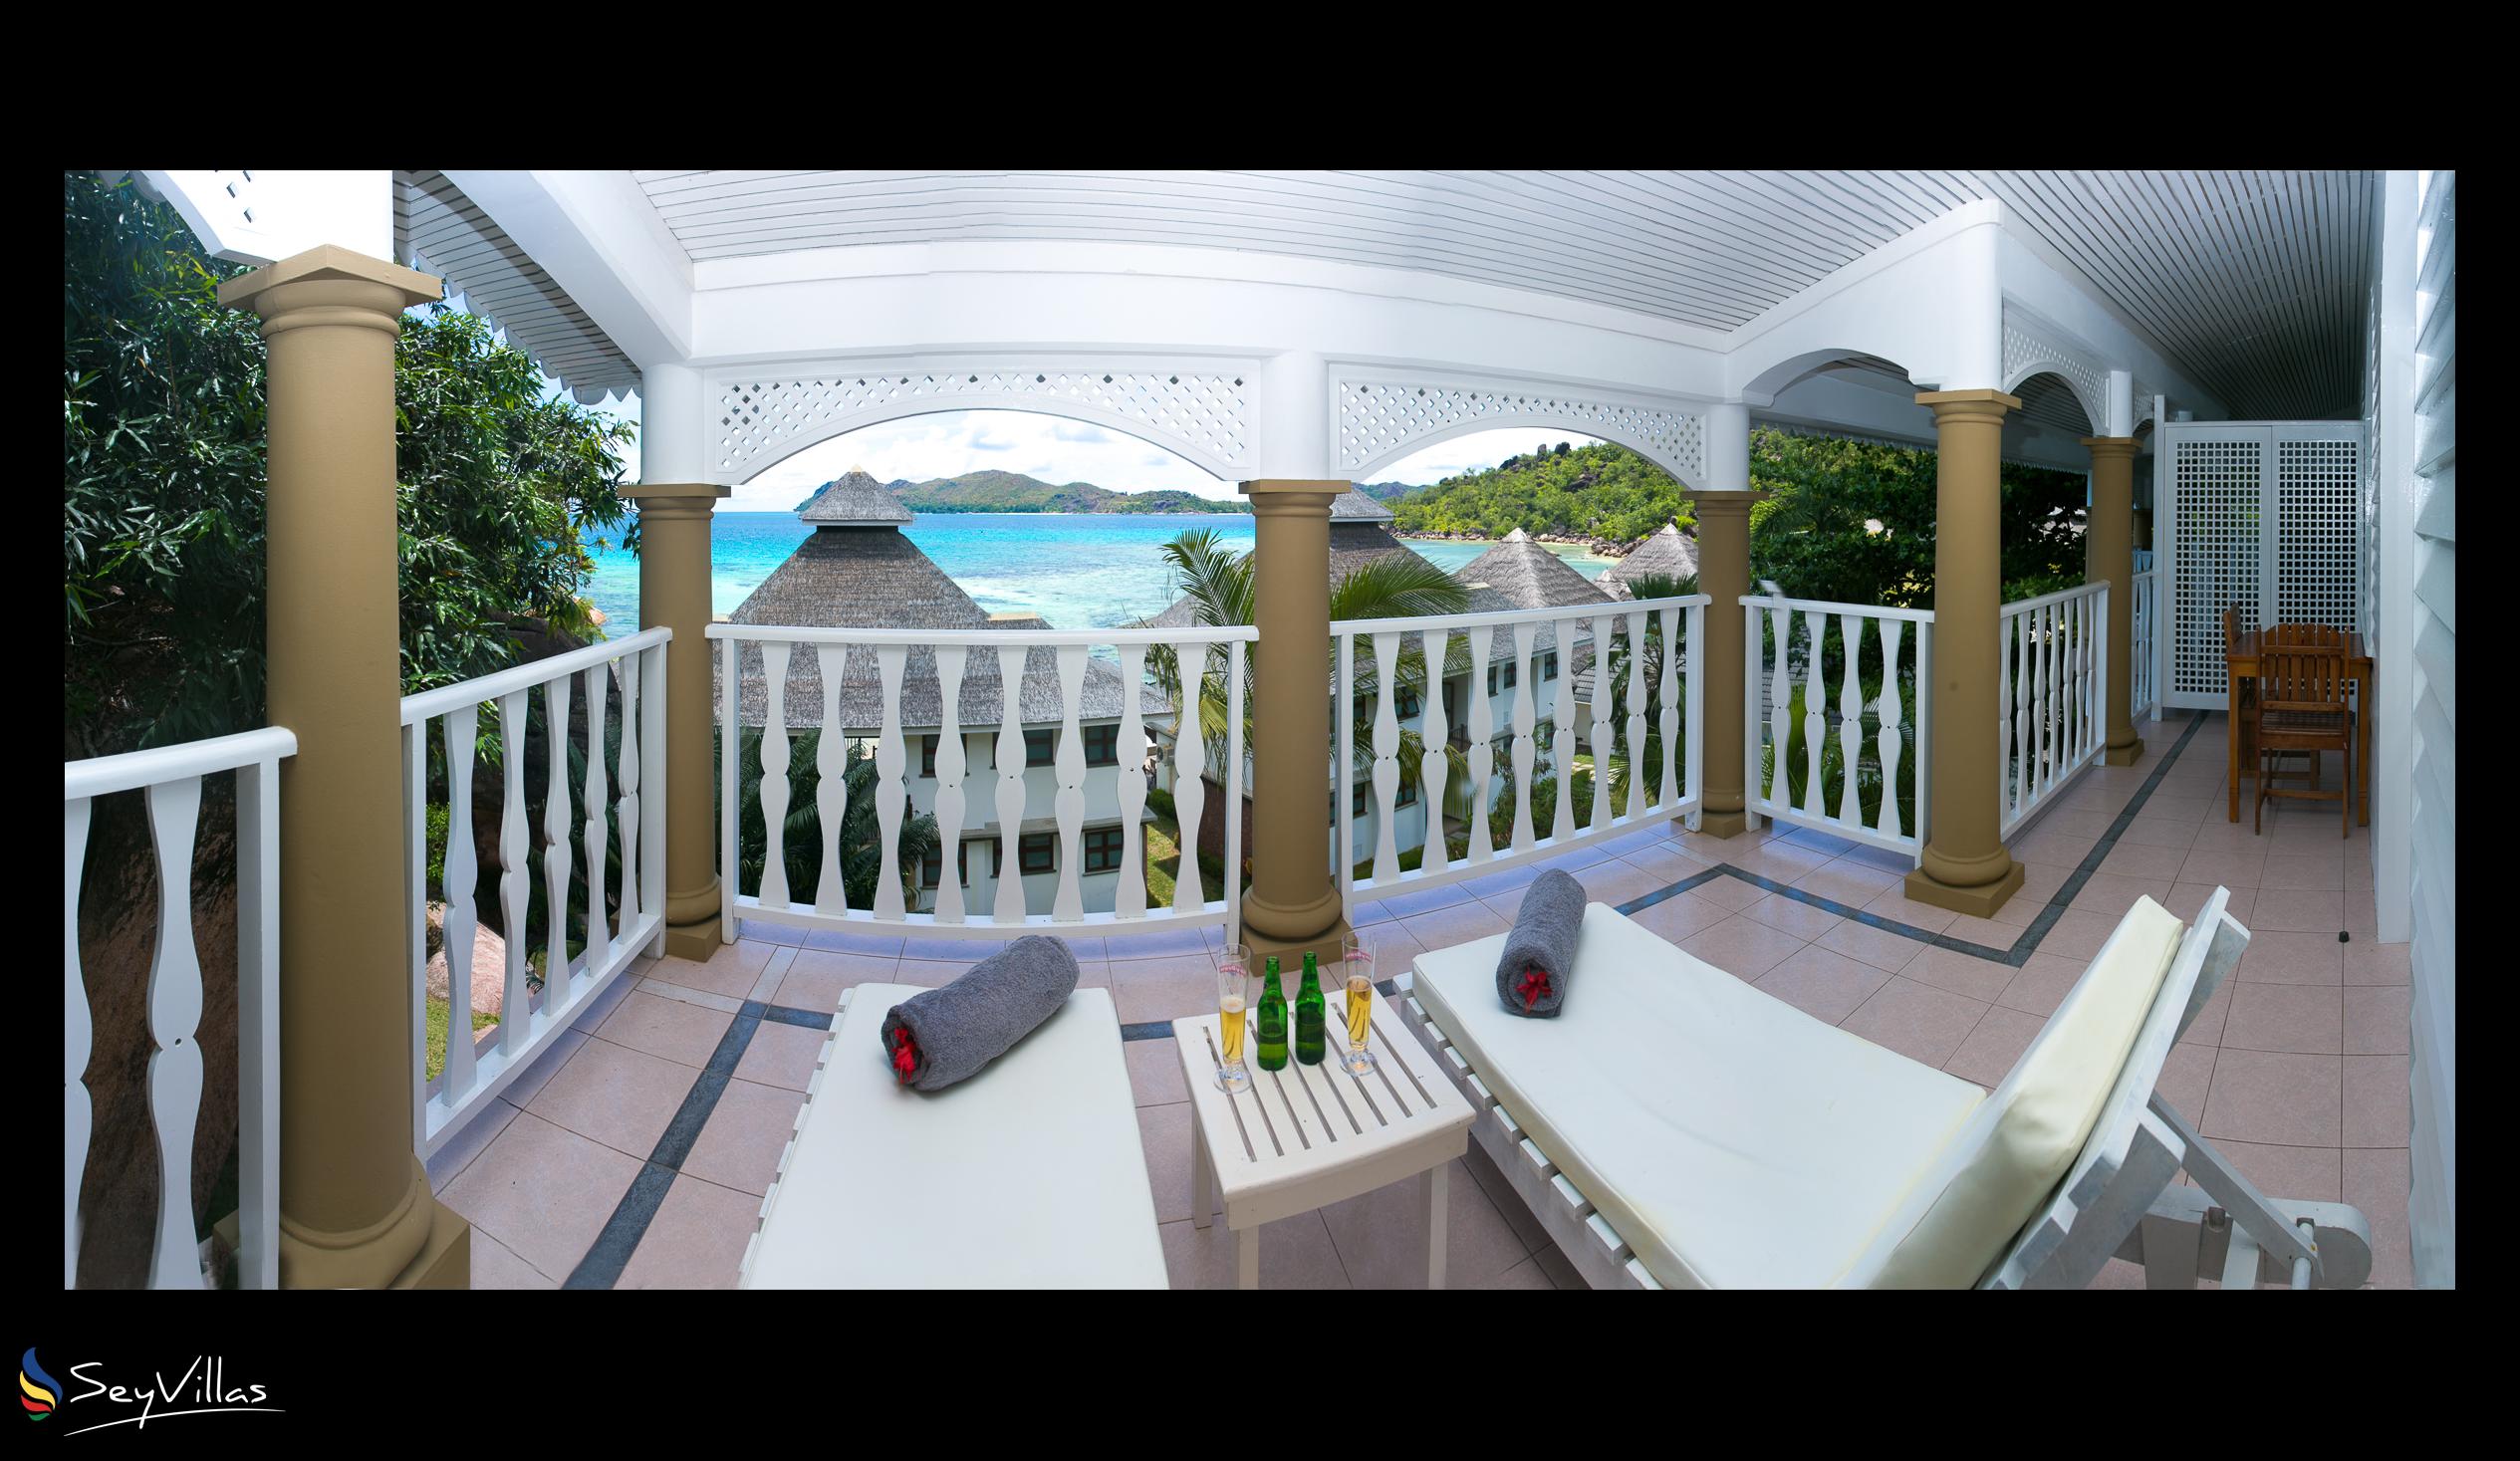 Photo 17: Le Domaine de La Reserve - Colonial Room - Praslin (Seychelles)